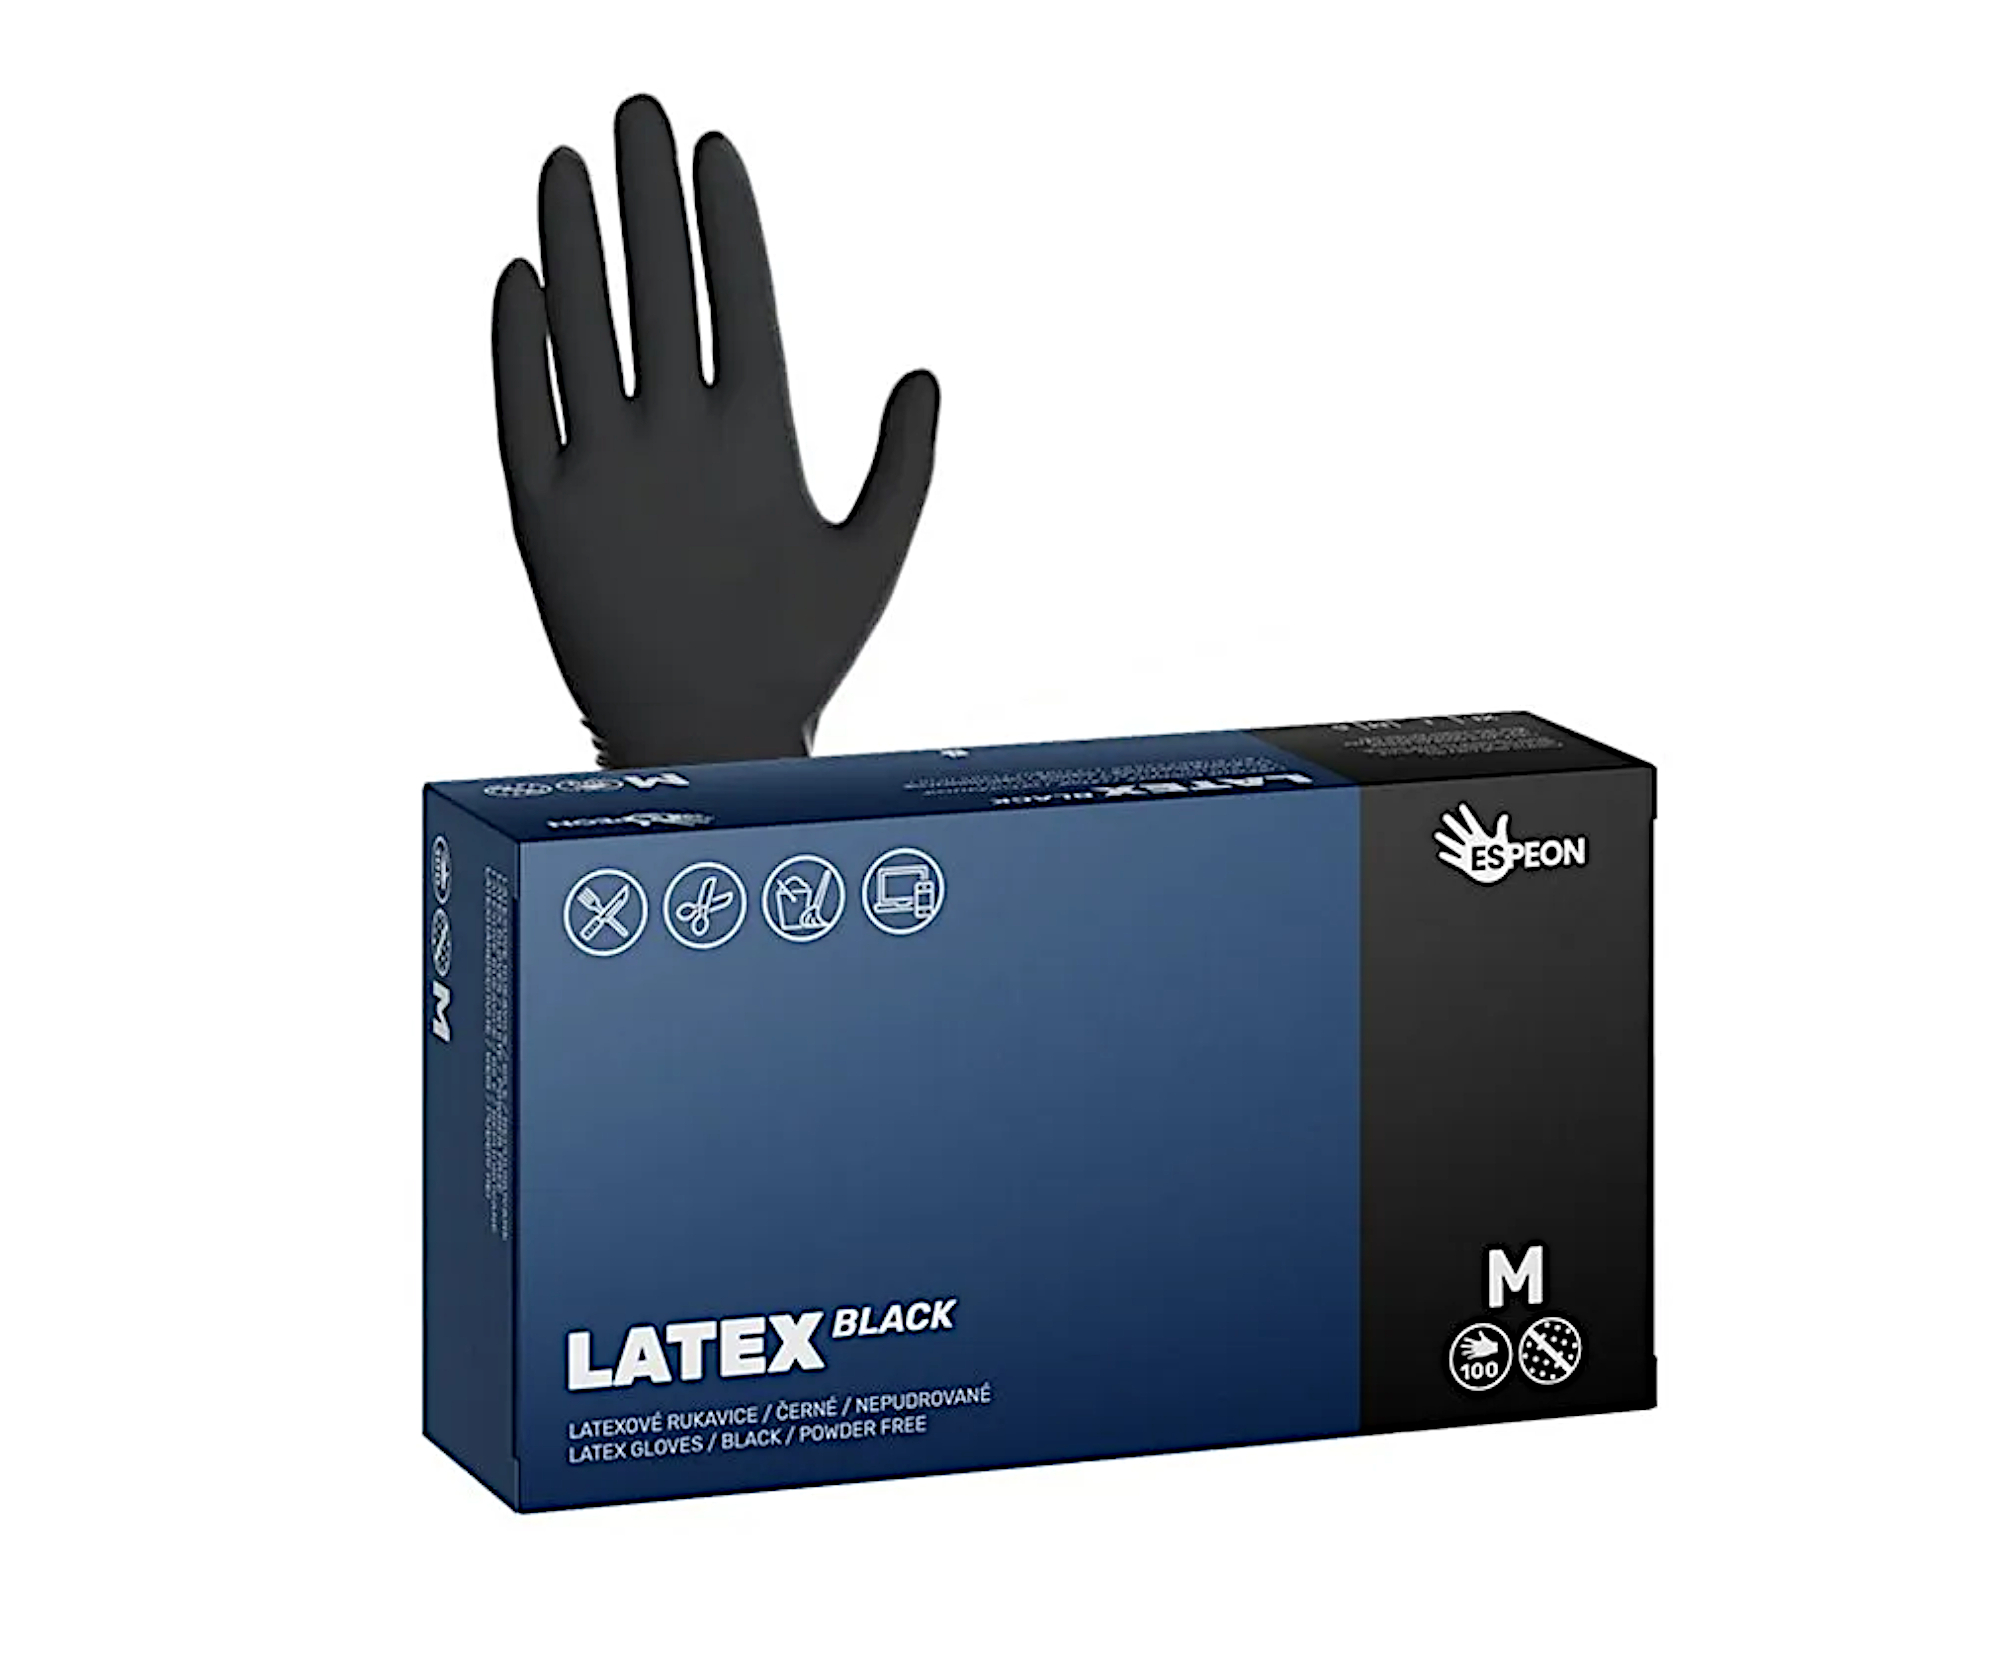 Latexové rukavice pro kadeřníky Espeon Latex Black 100 ks - černé, velikost M (100068) + dárek zdarma